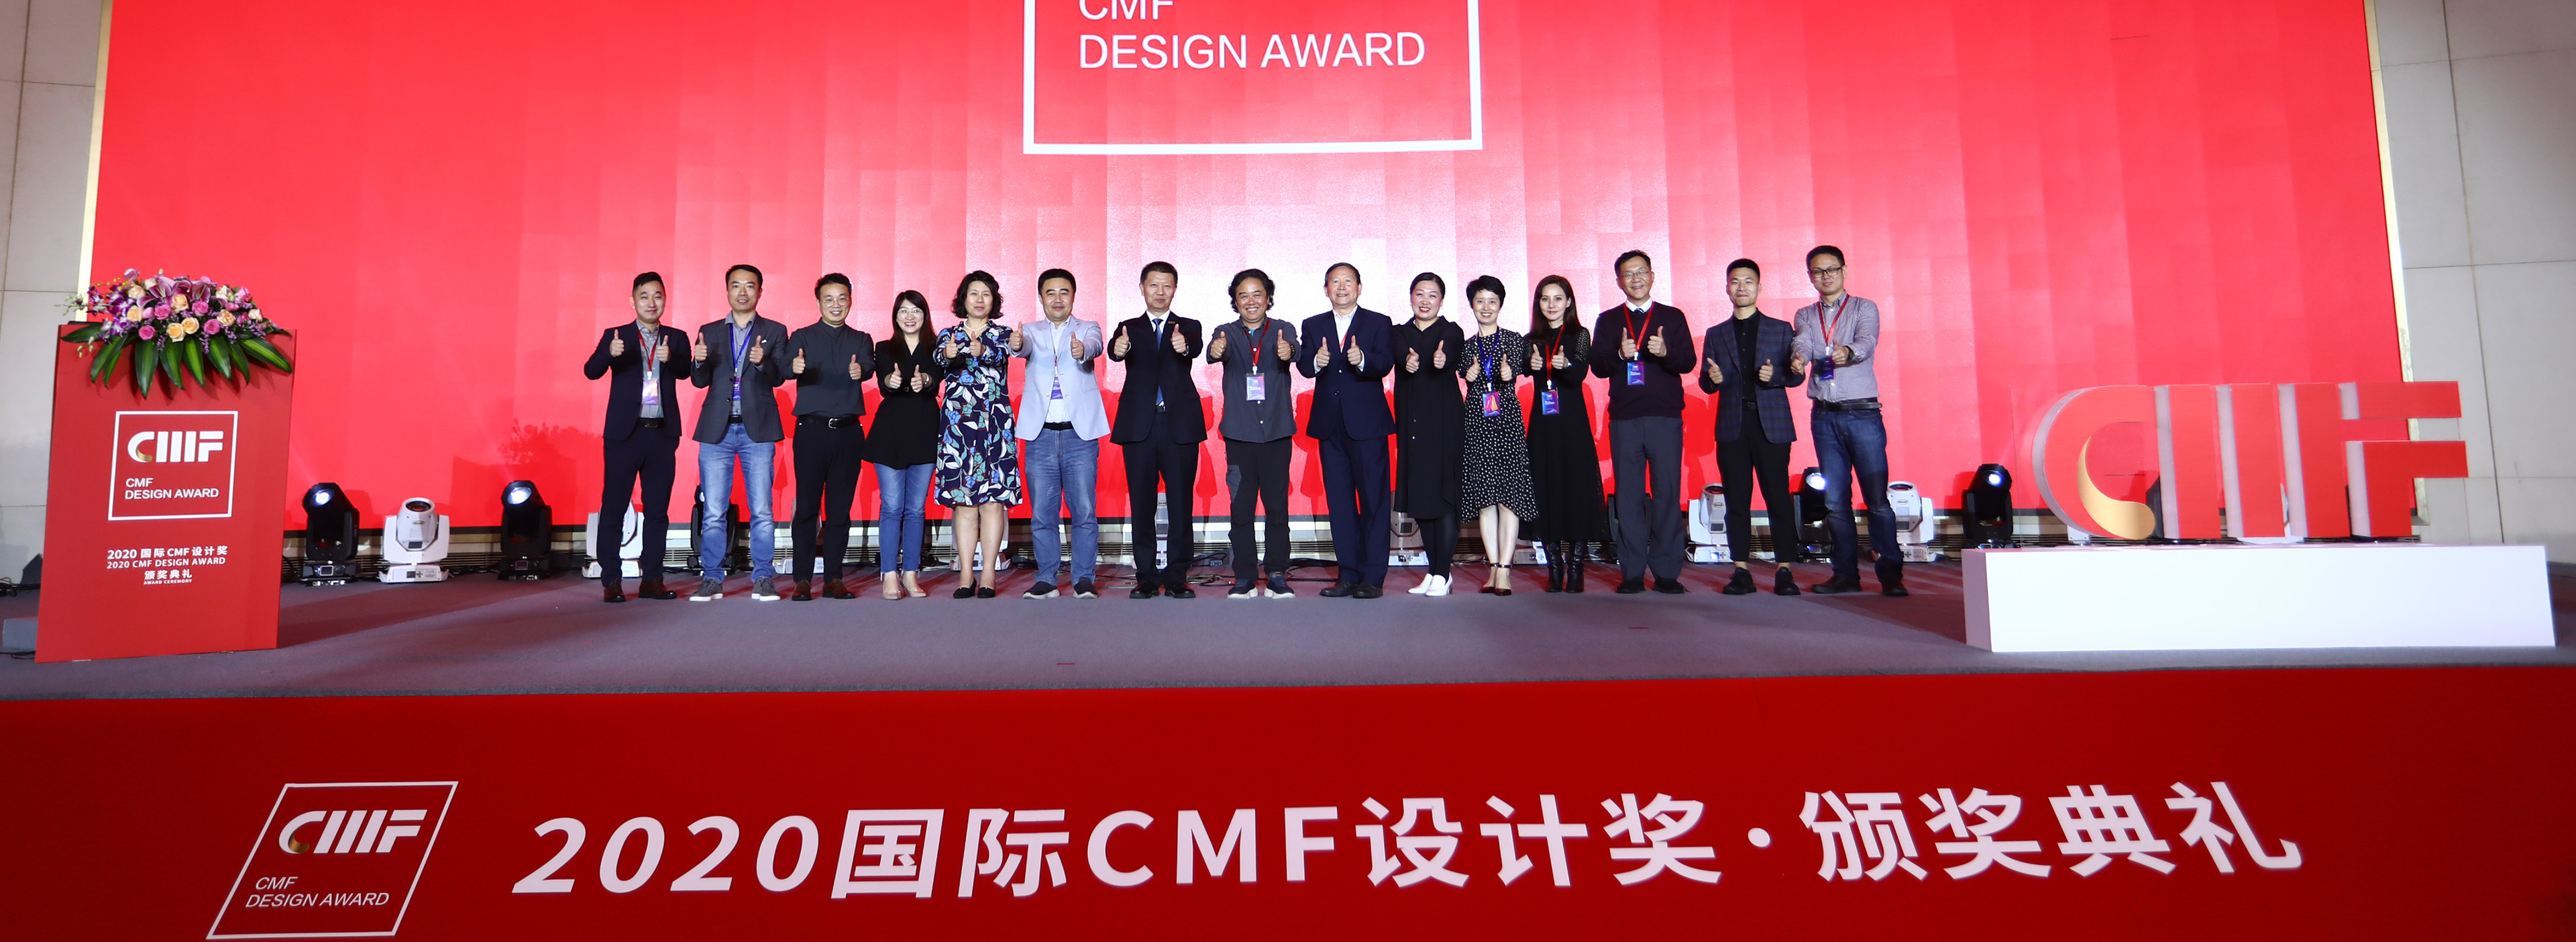 2020国际CMF设计奖.颁奖典礼